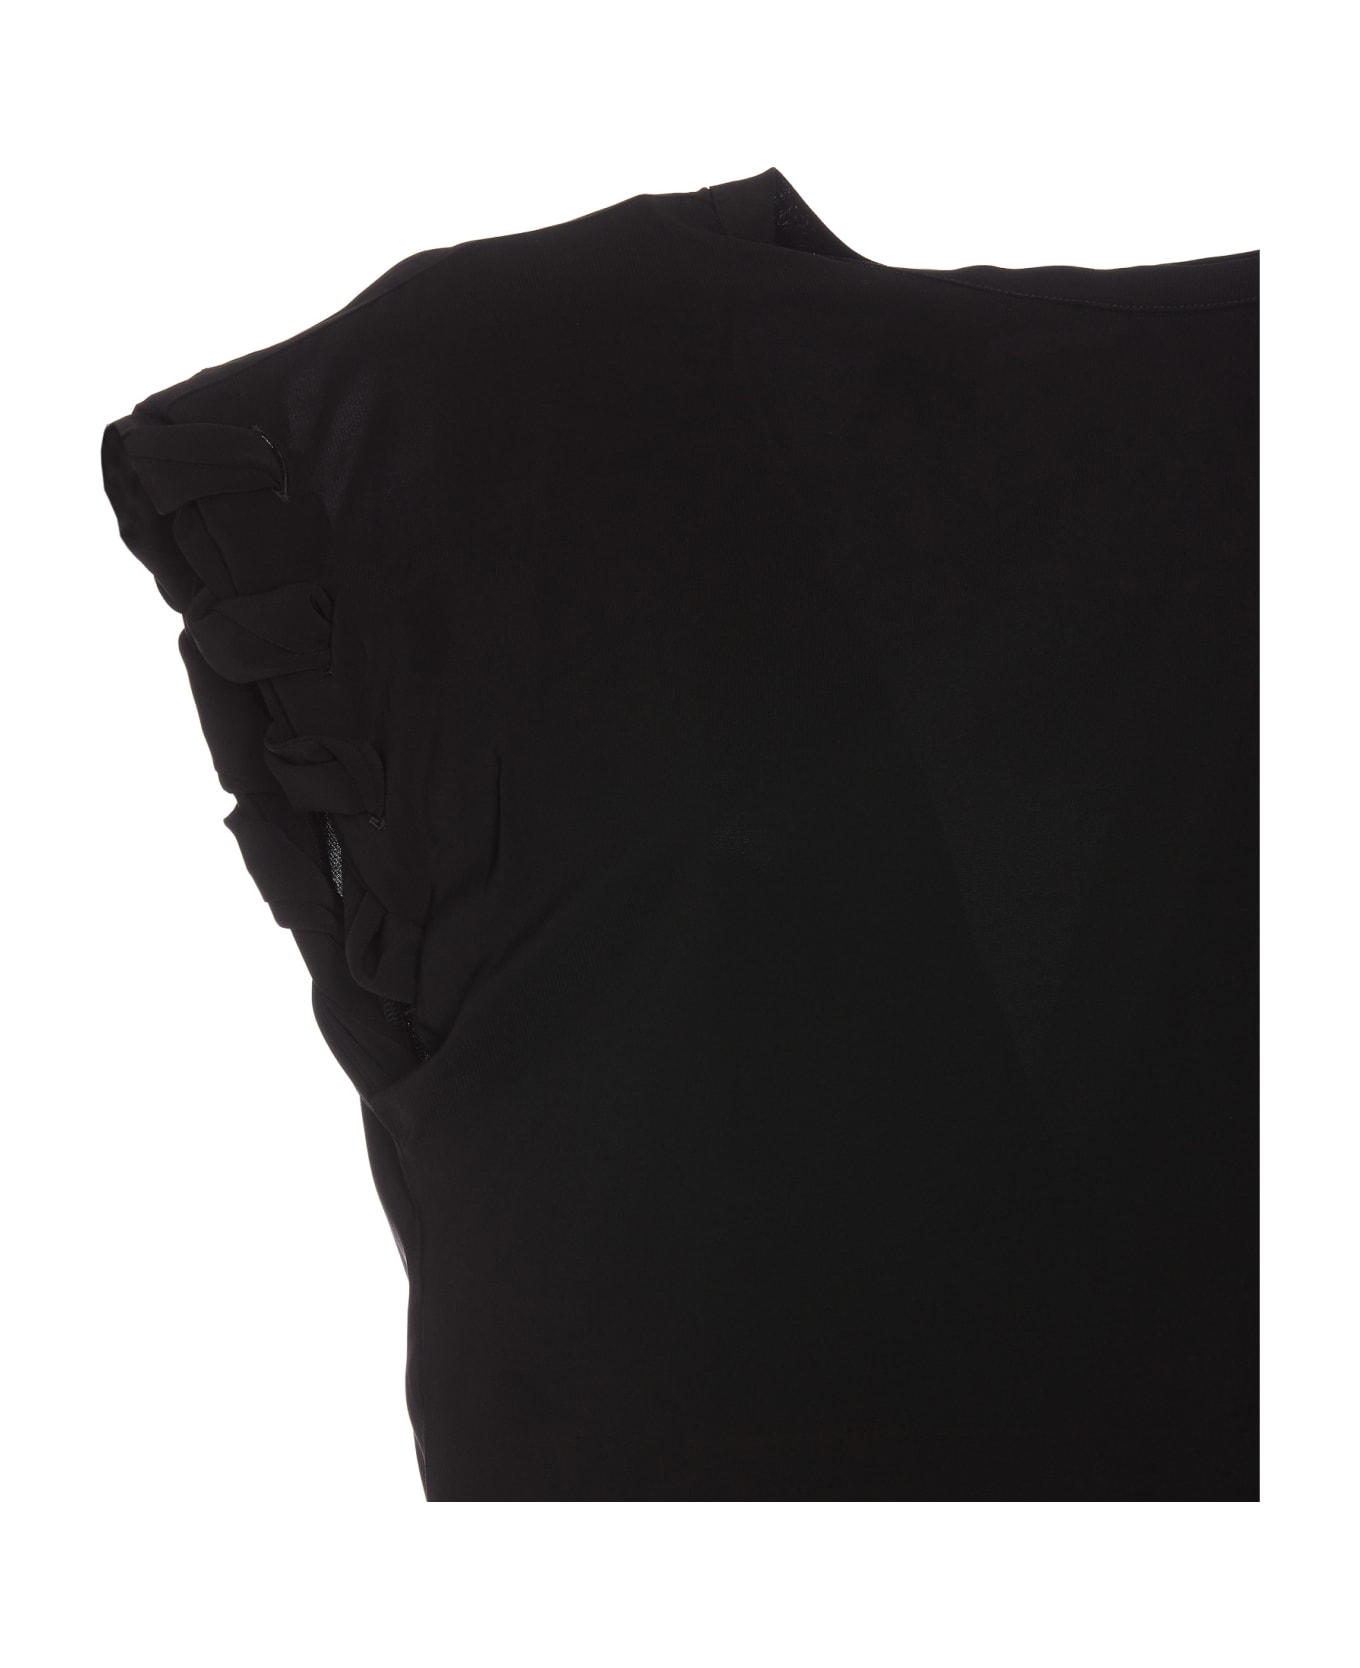 Pinko Tindaro Shirt - Black